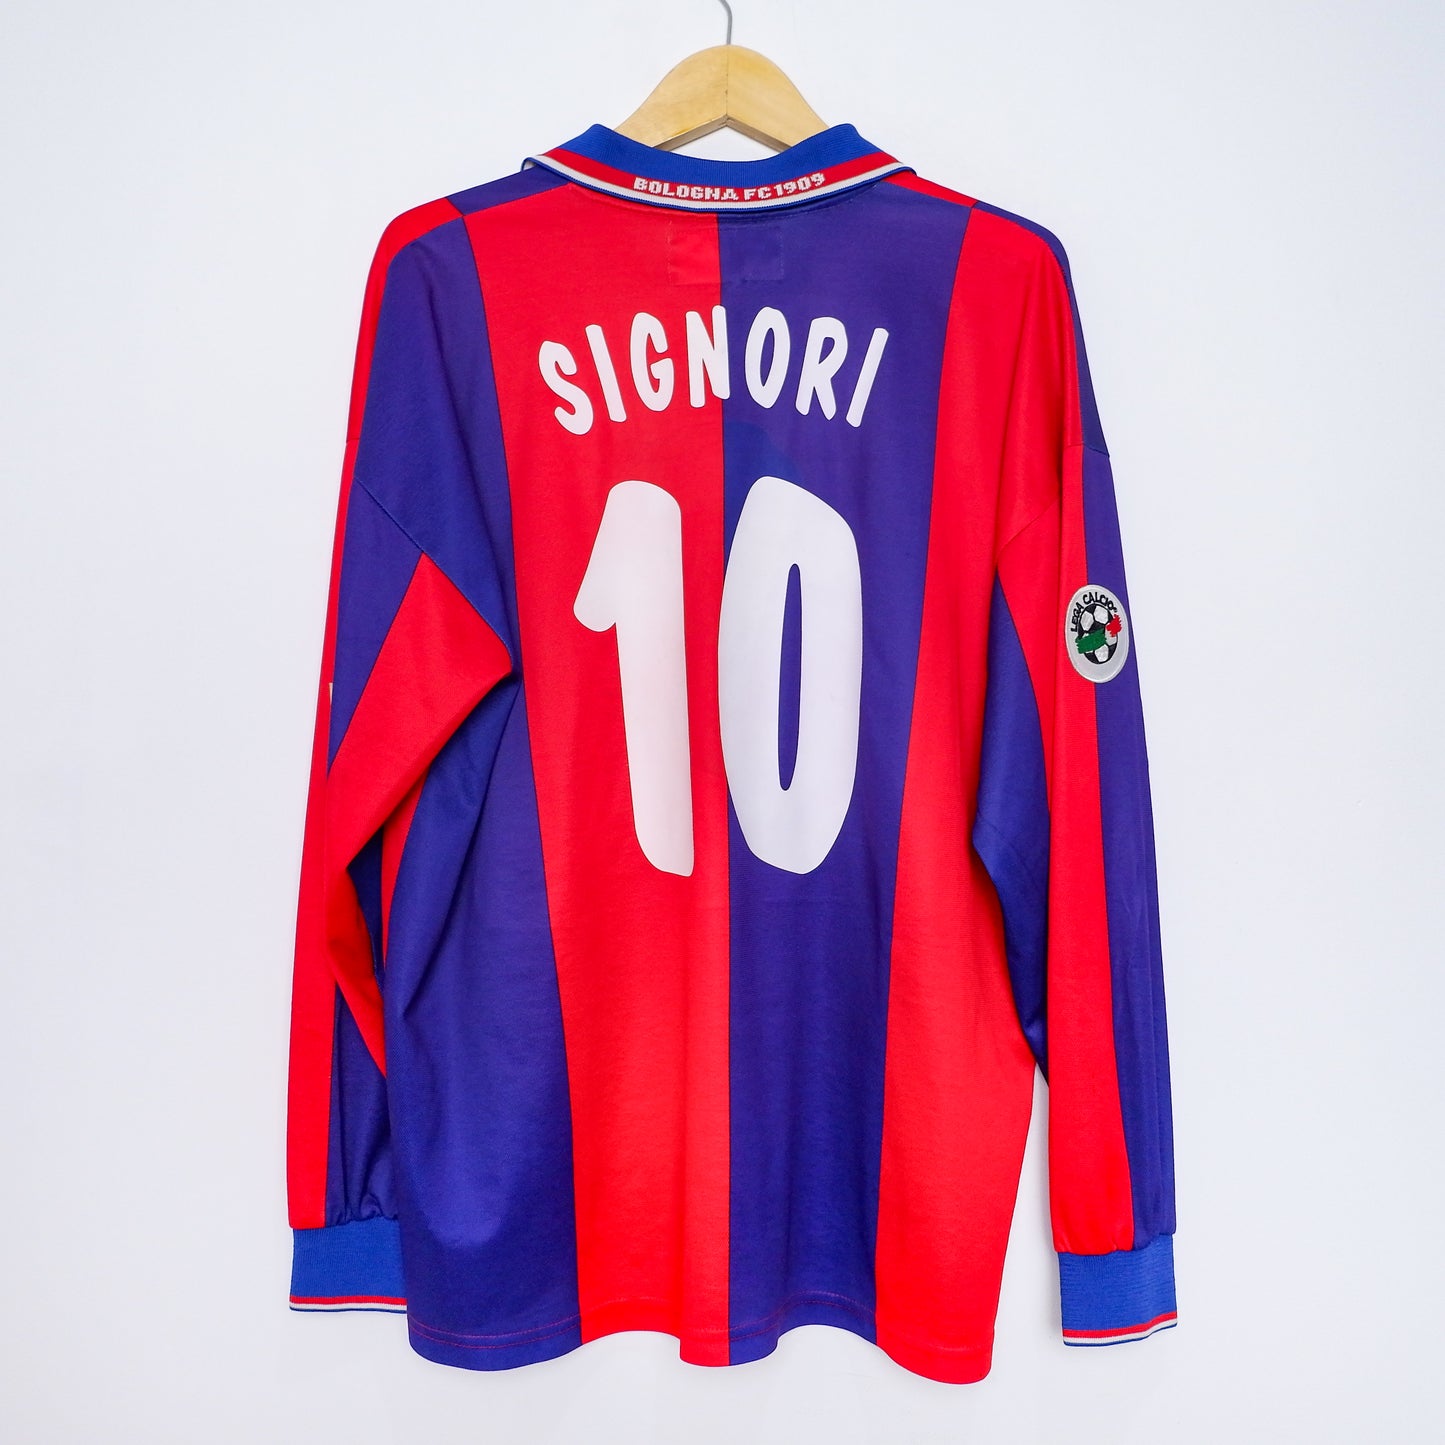 Authentic Bologna 2001/02 - Giuseppe Signori #10 Size XL (Long Sleeve)